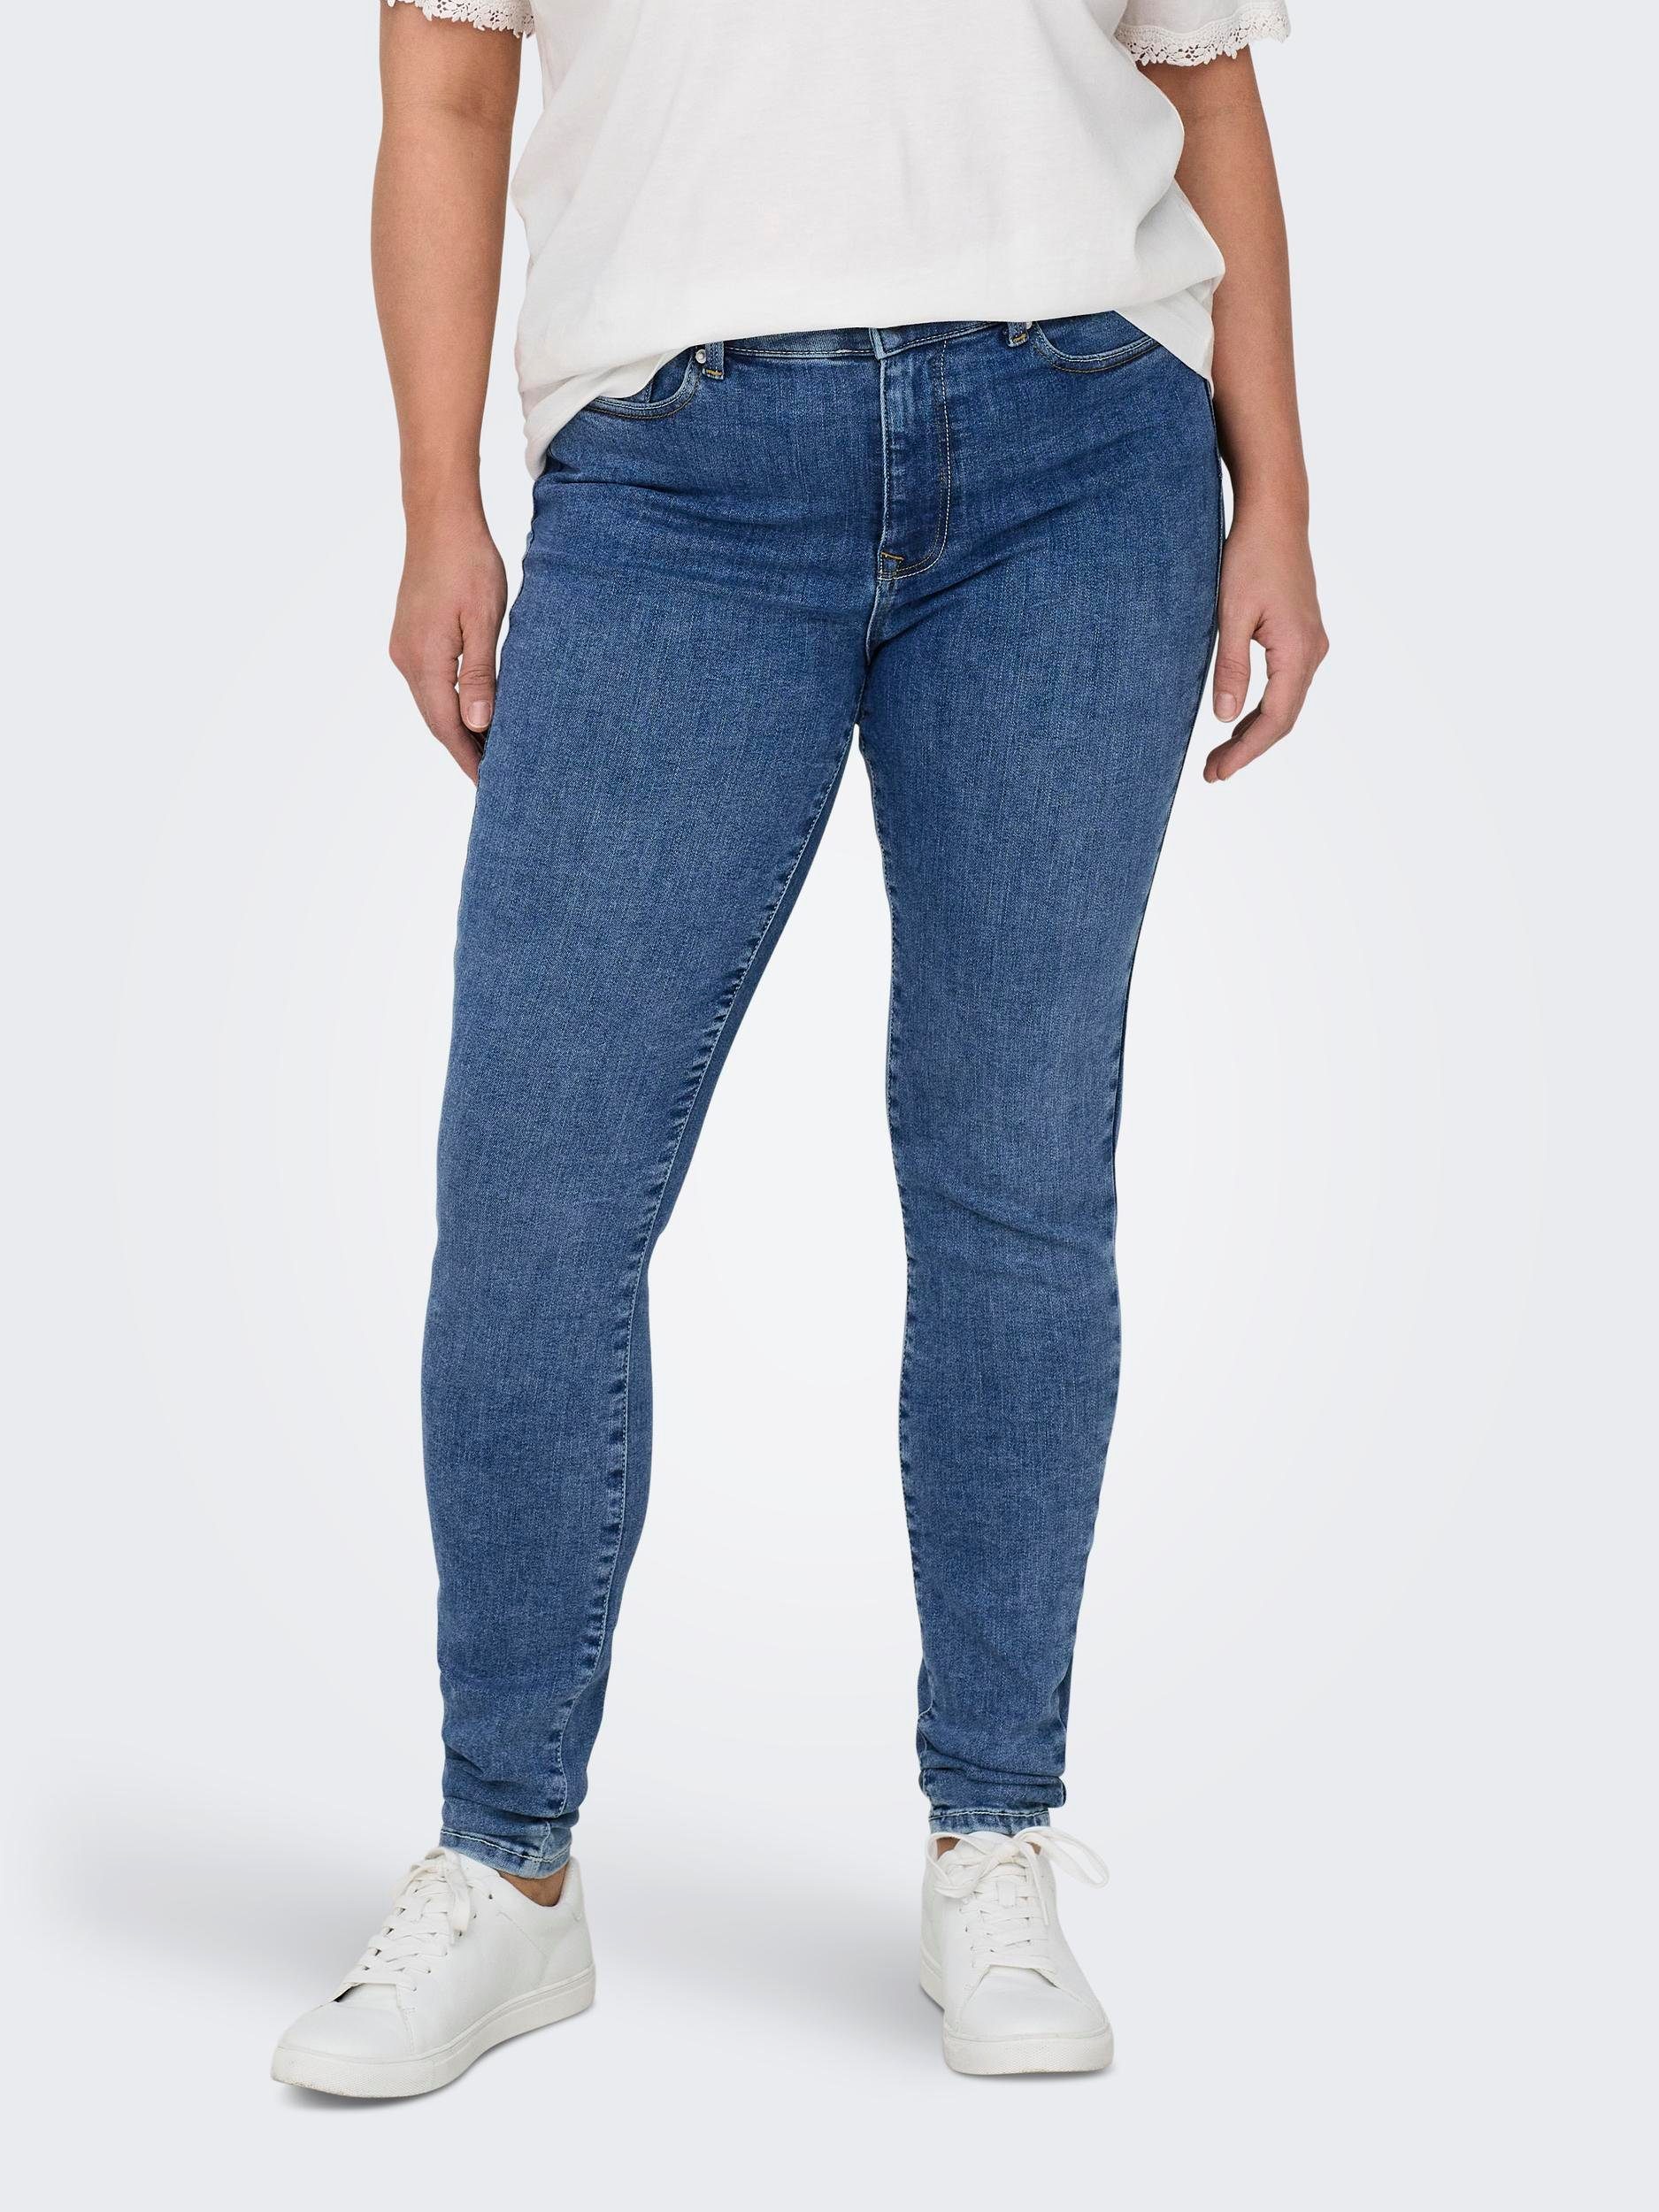 Stretch-Anteil CARMAKOMA ONLY optimale PUSHUP eine mit Passform Baumwollmischung elastischer Skinny-fit-Jeans für MID SKINNY DNM CARPOWER SOO411, Aus